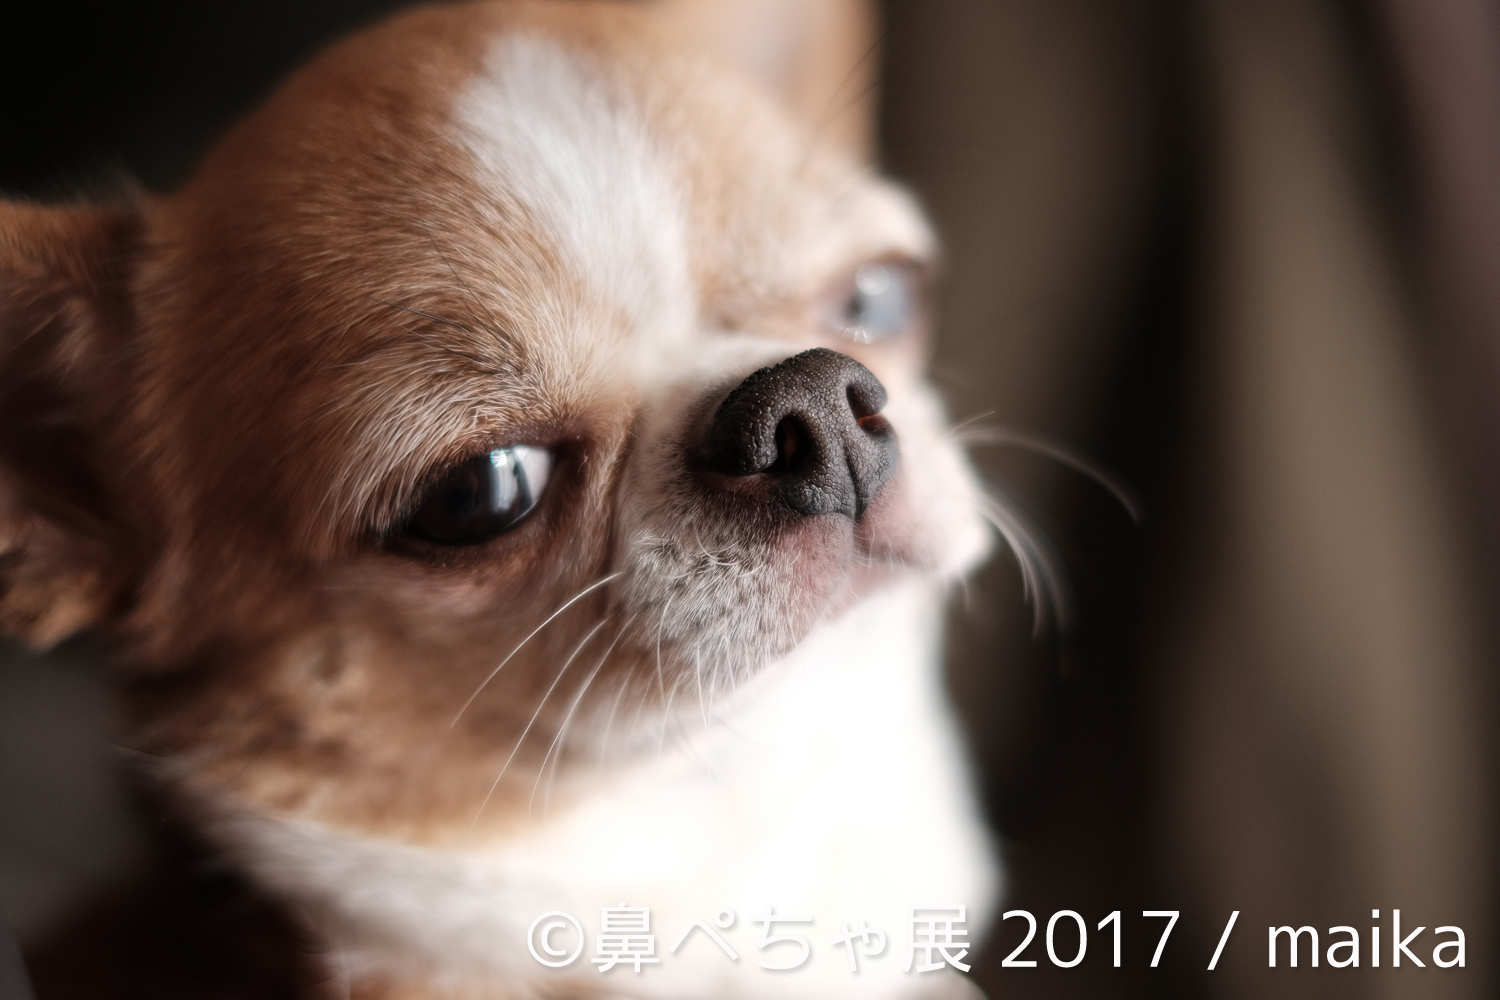 画像 ブサカワな 鼻ぺちゃ犬 の写真展が浅草橋にて開催 フレンチブルにパグにチワワまで インスタ有名犬が大集合 の画像3 Spice エンタメ特化型情報メディア スパイス